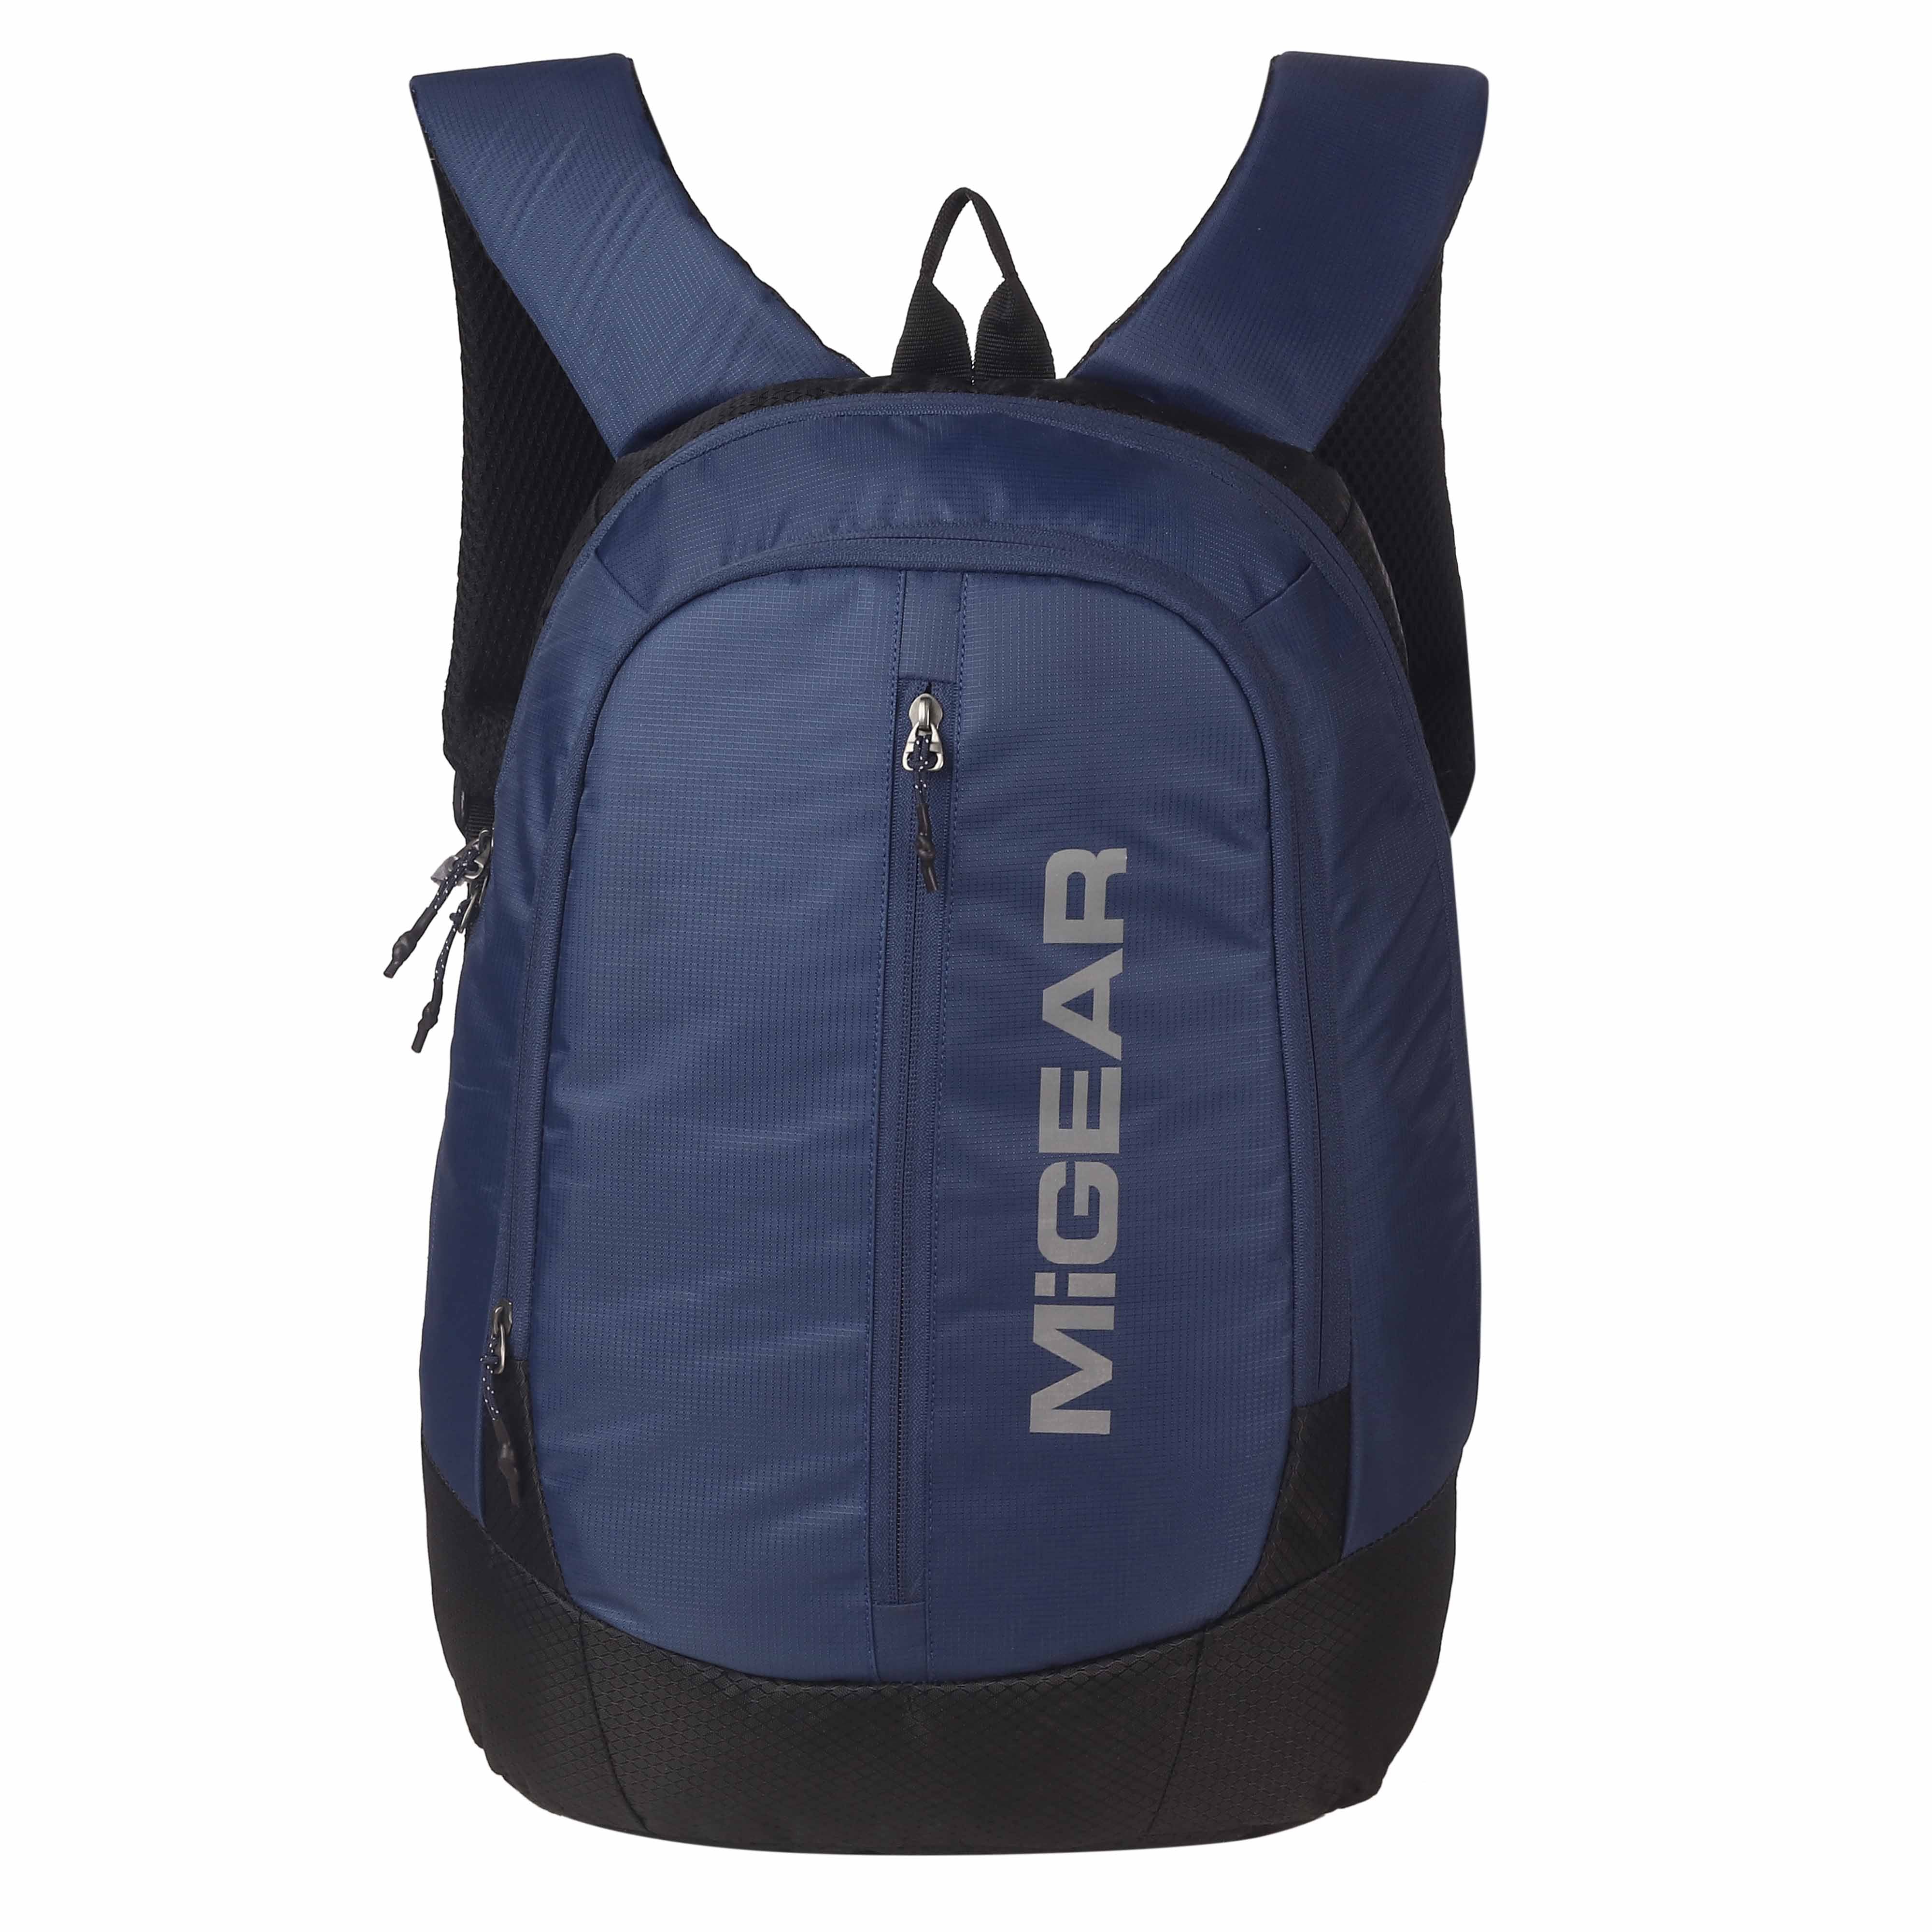 VentureVault Backpack